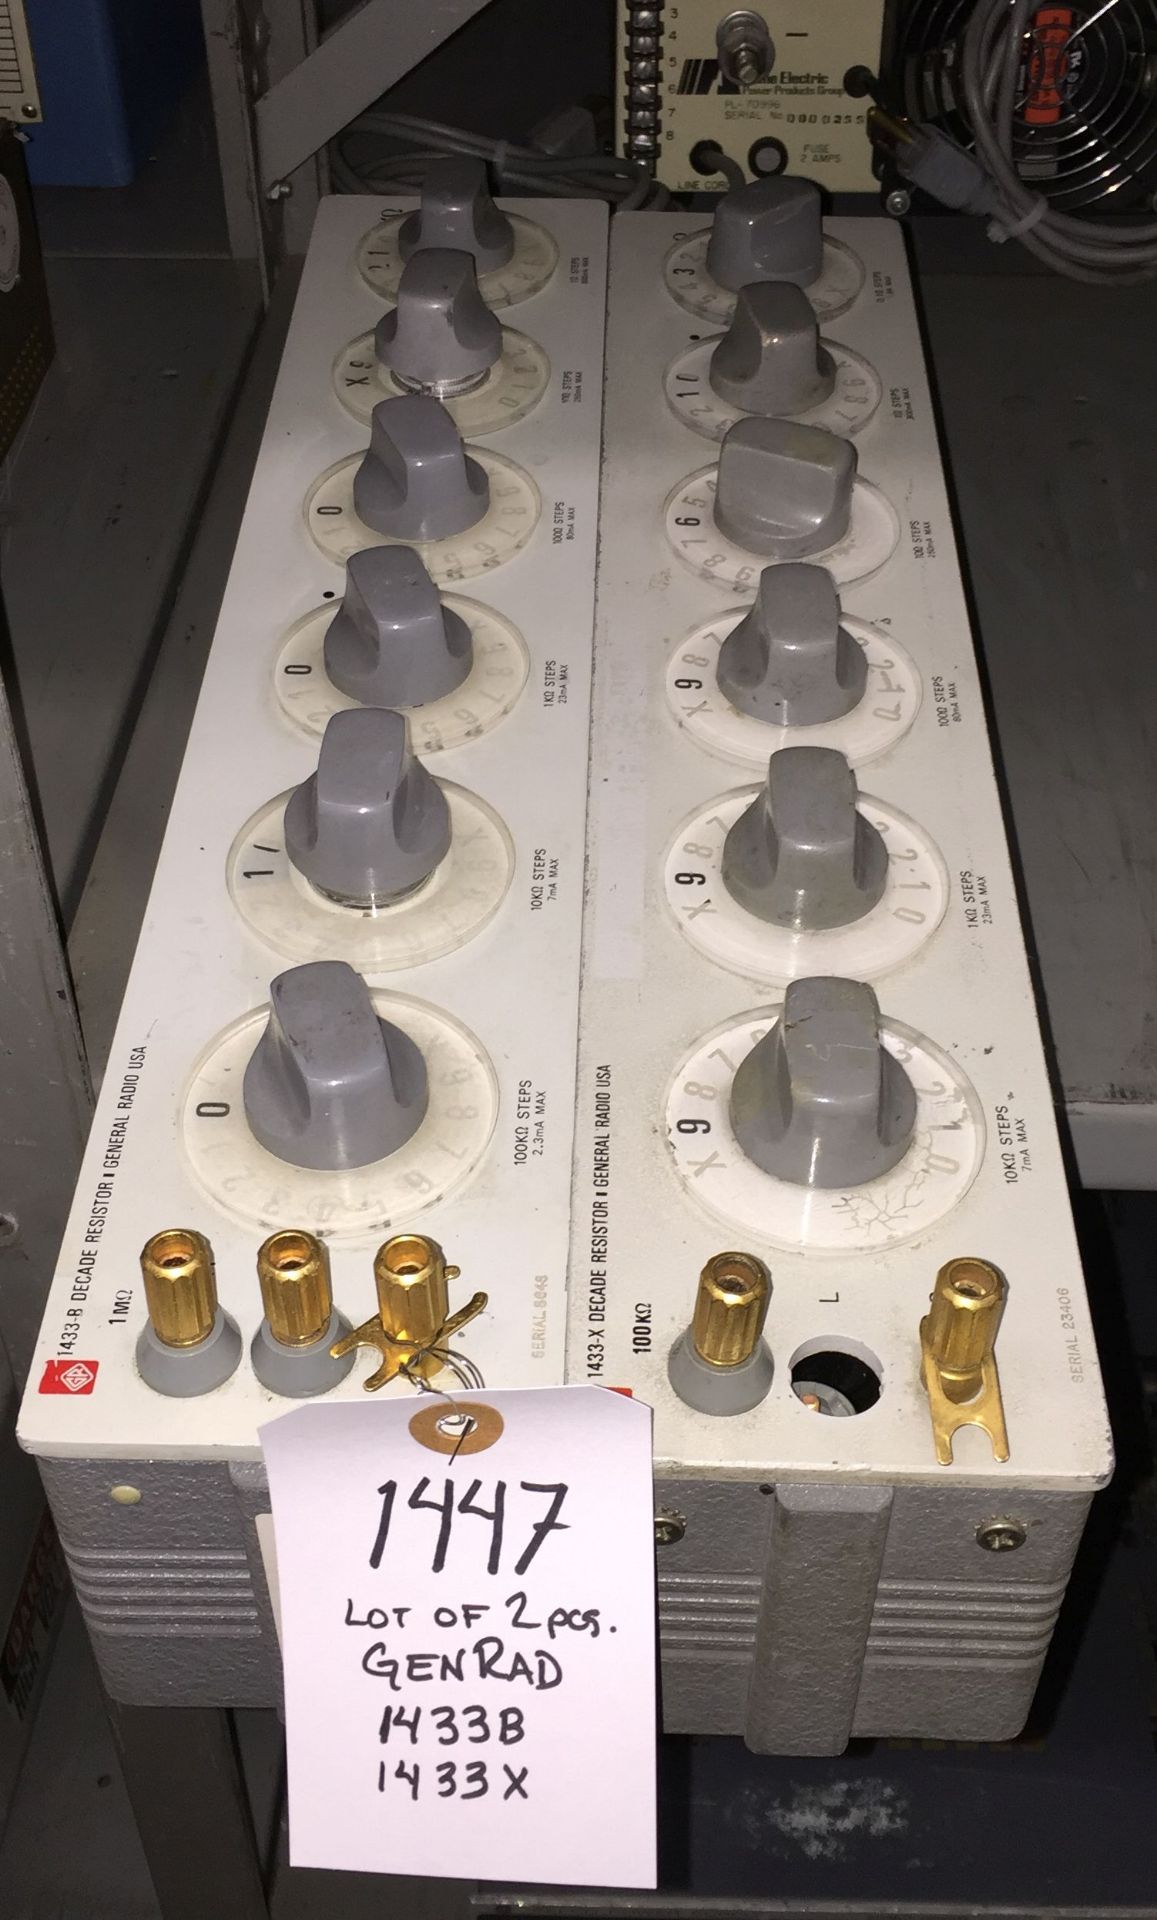 Lot of (1) General Radio 1433-B Deacde Resistor / 1433-X Decade Resistor